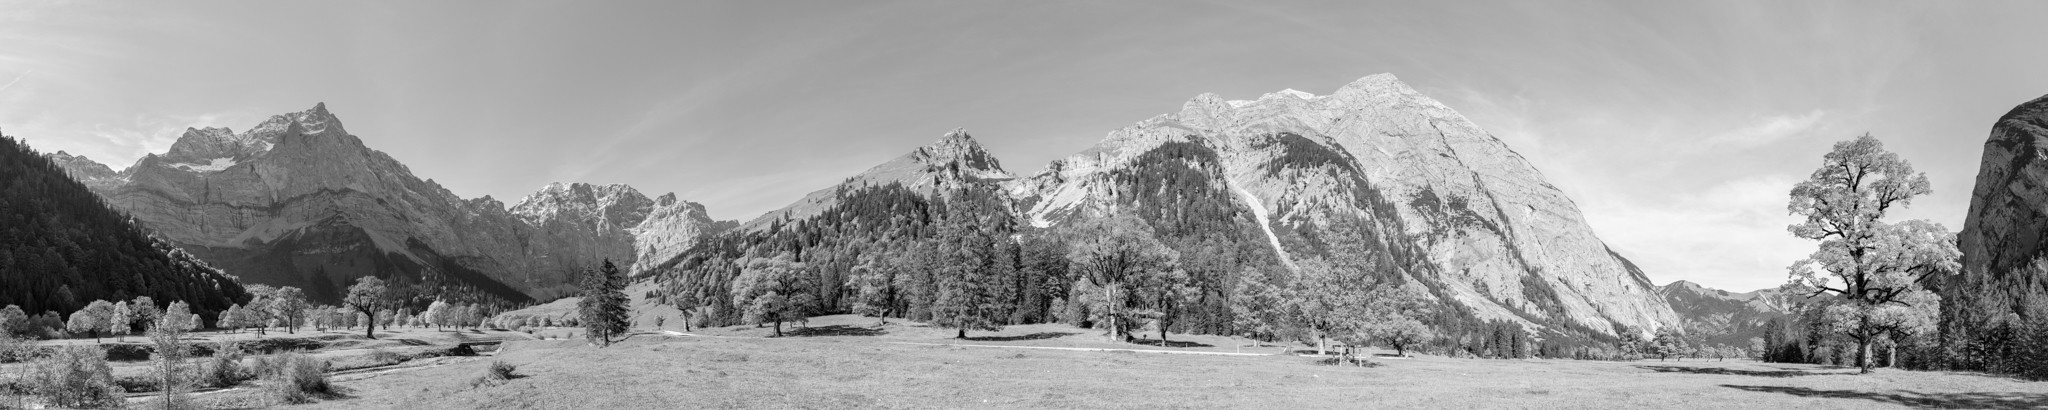 Großer Ahornboden - Engalm - Panorama schwarz weiß. Panorama am Großen Ahornboden an der Engalm in Tirol. 